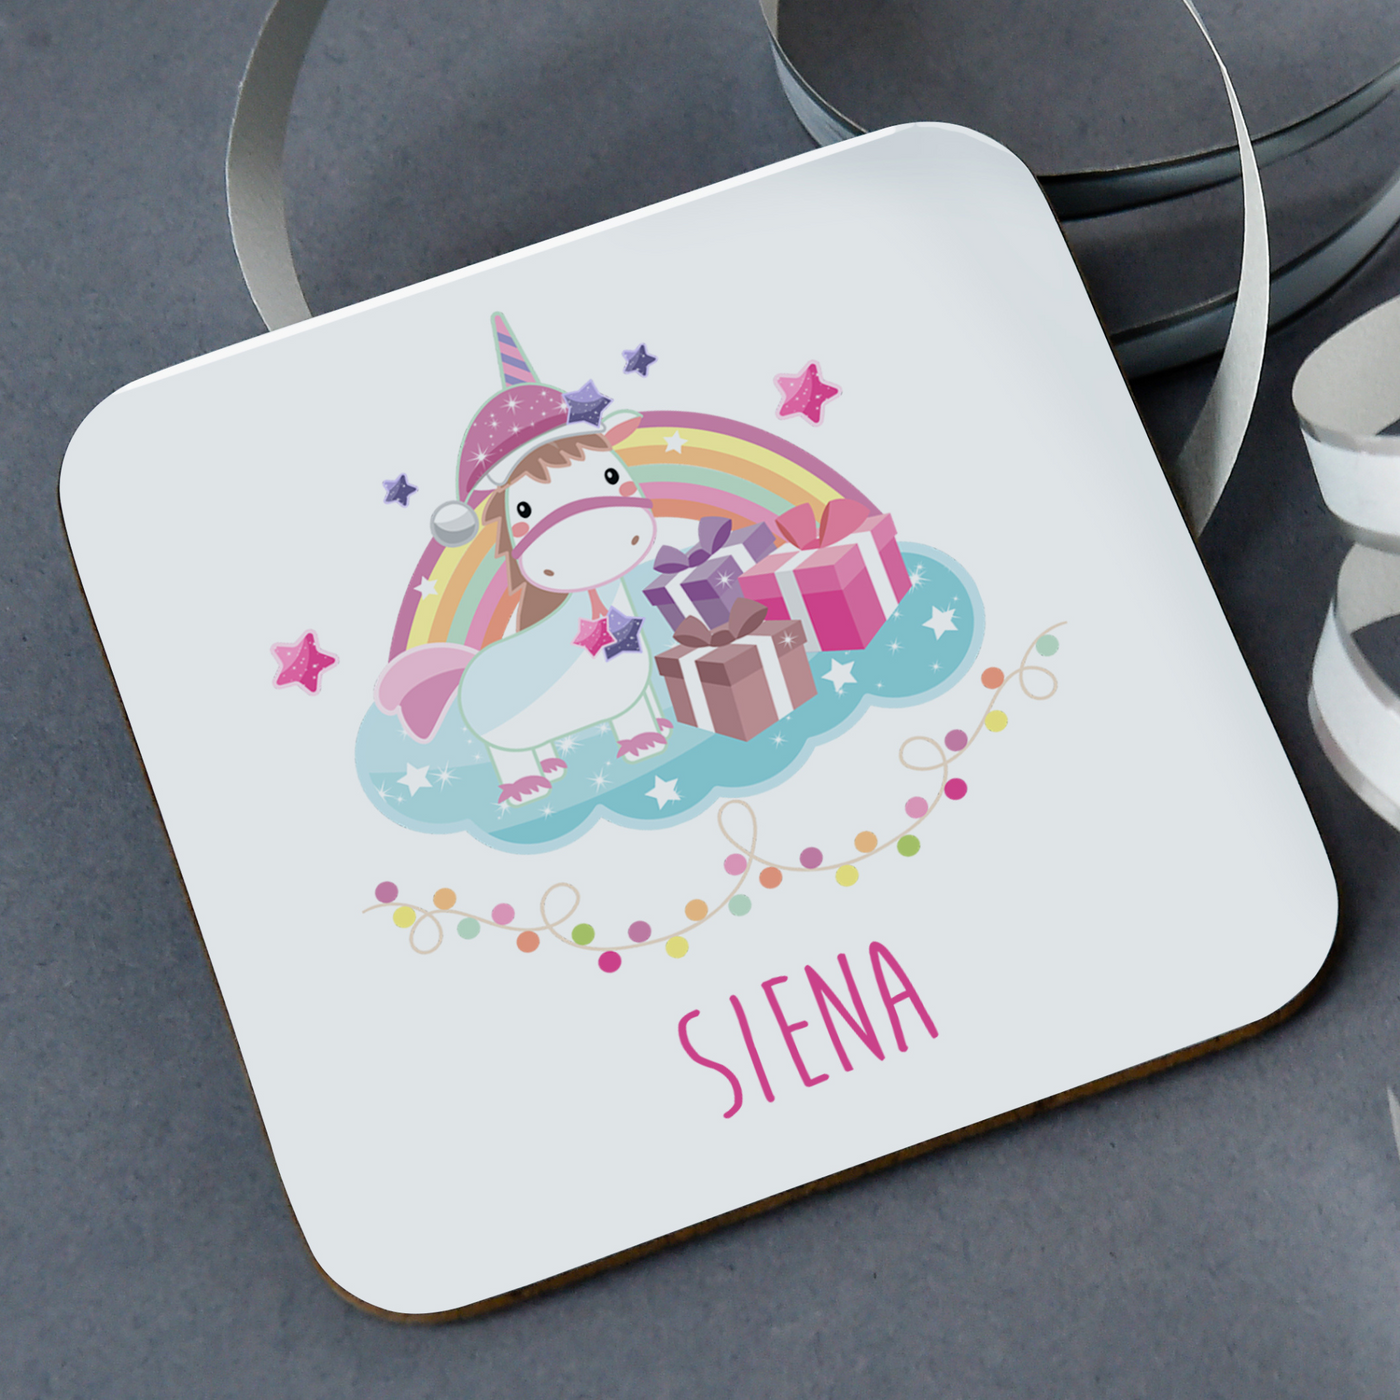 Personalised Coaster | Christmas Unicorn